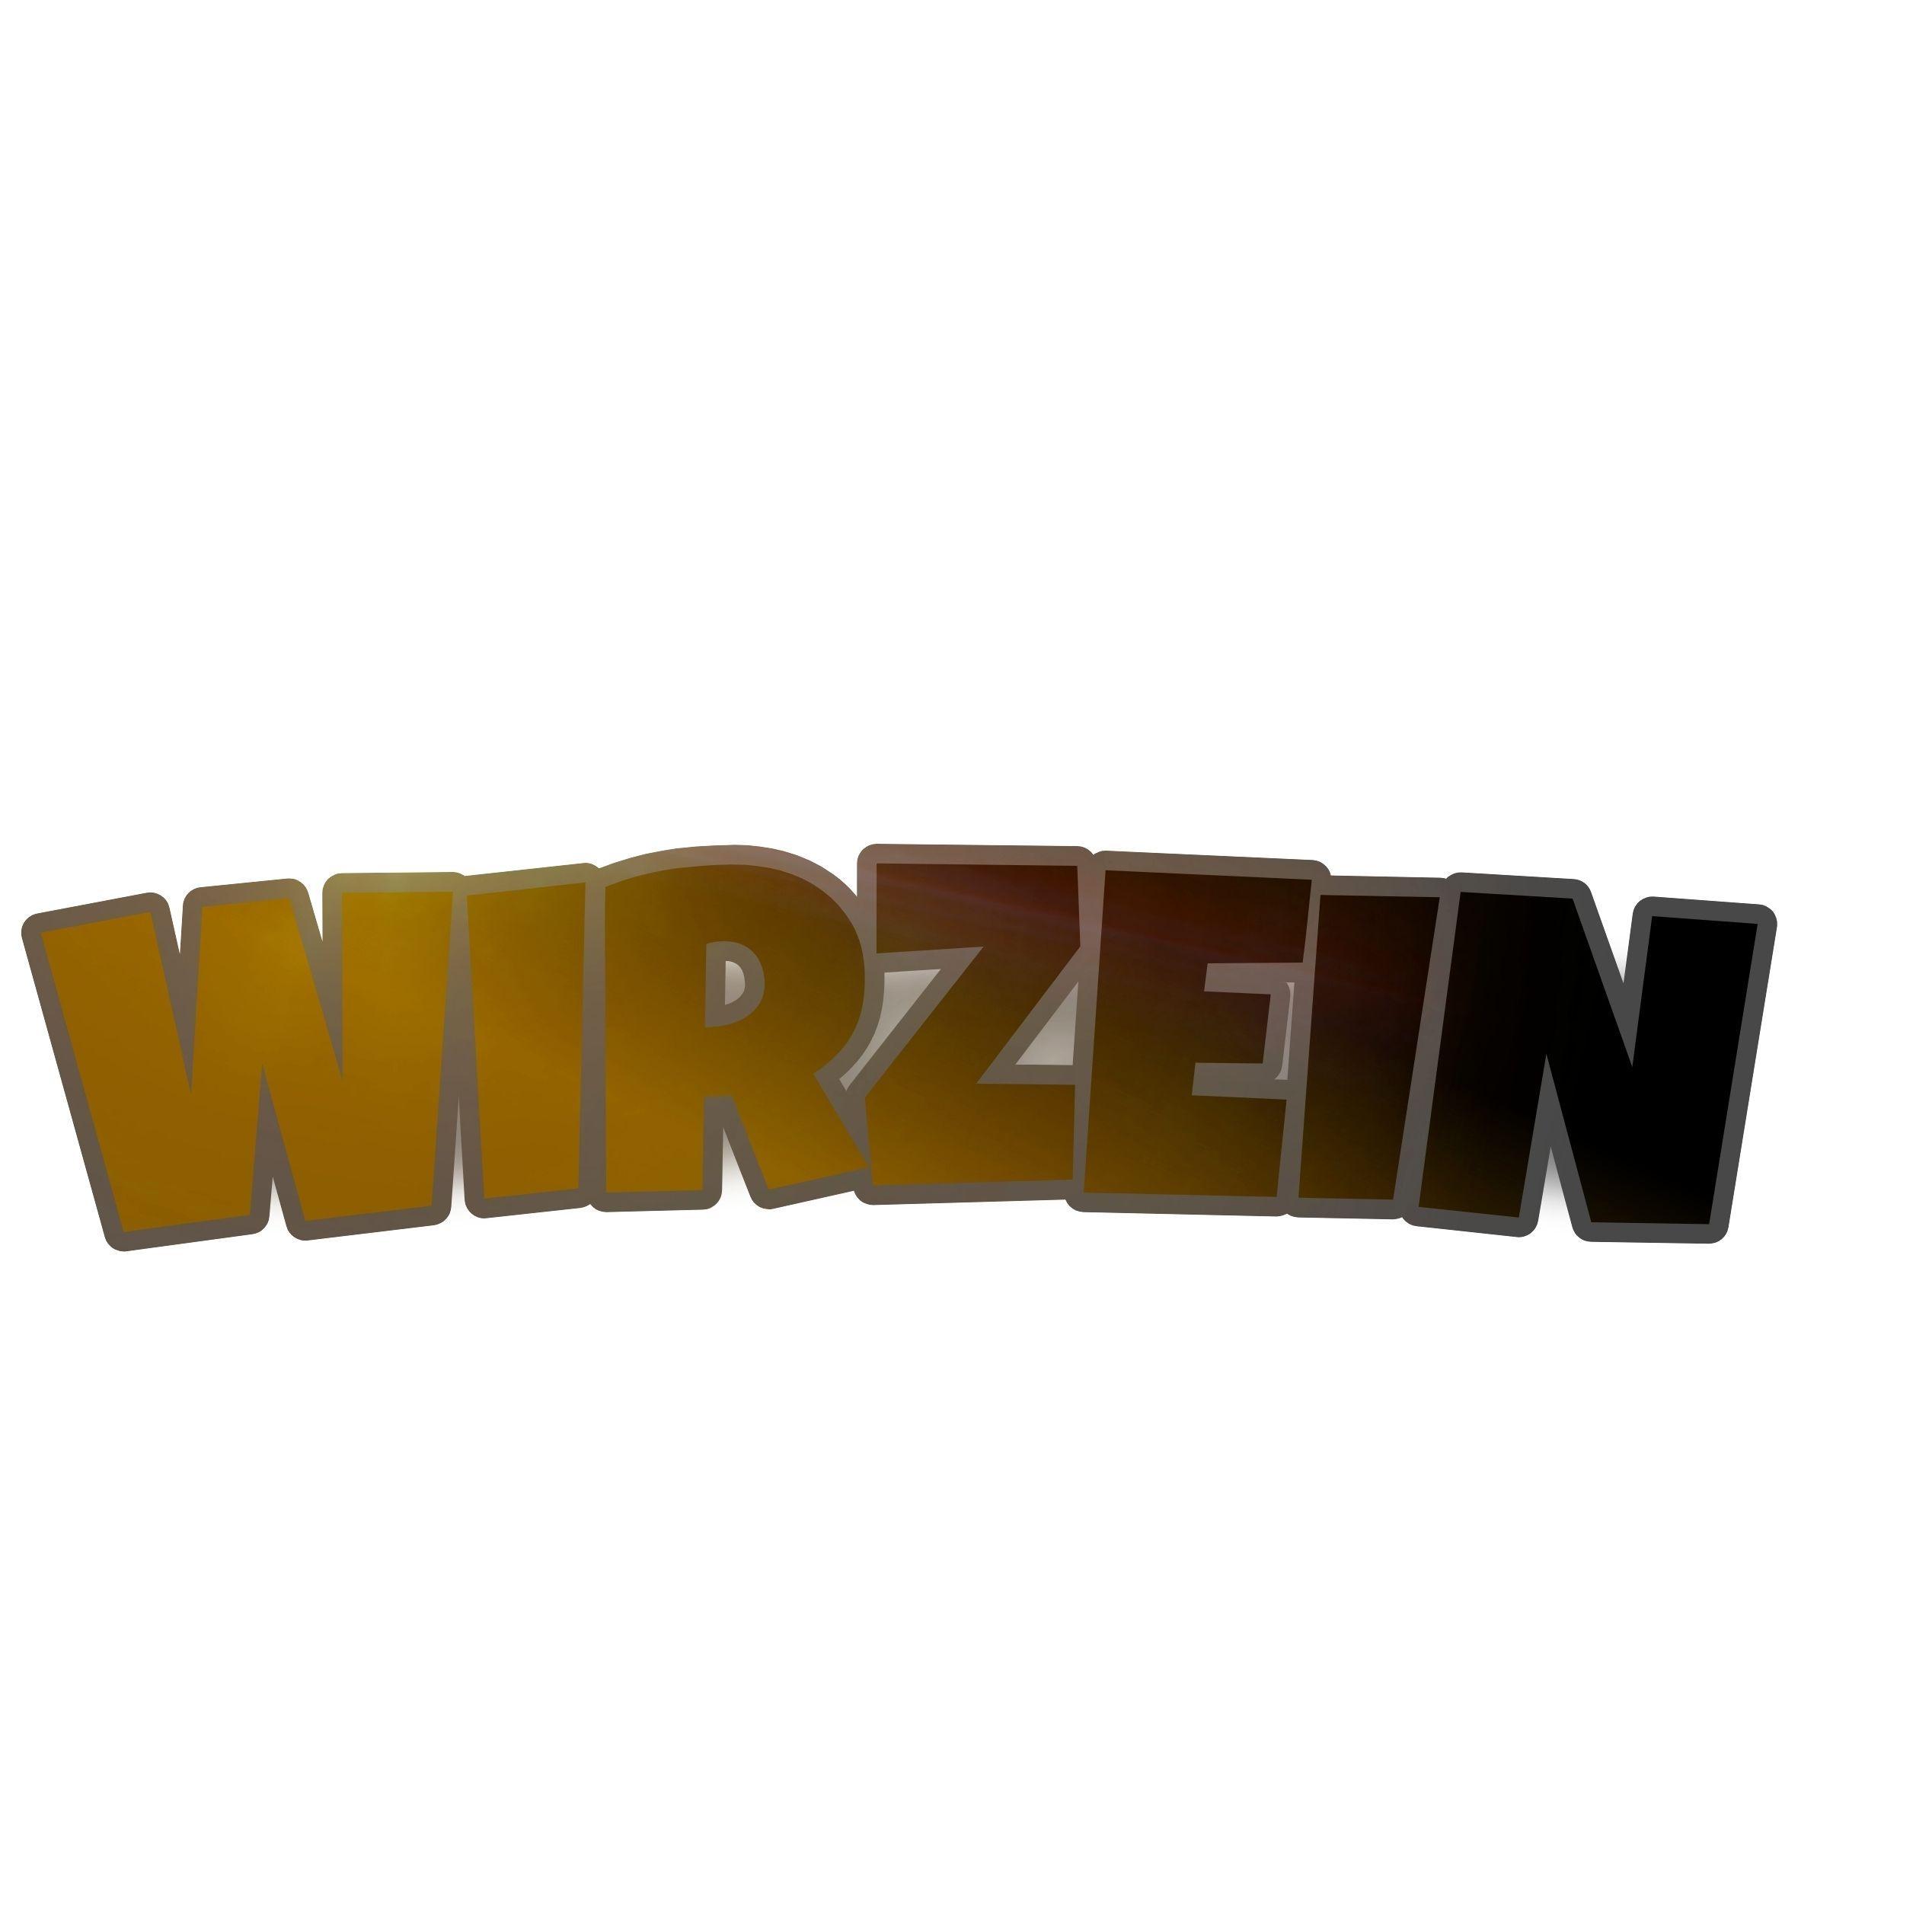 Player wirzein avatar